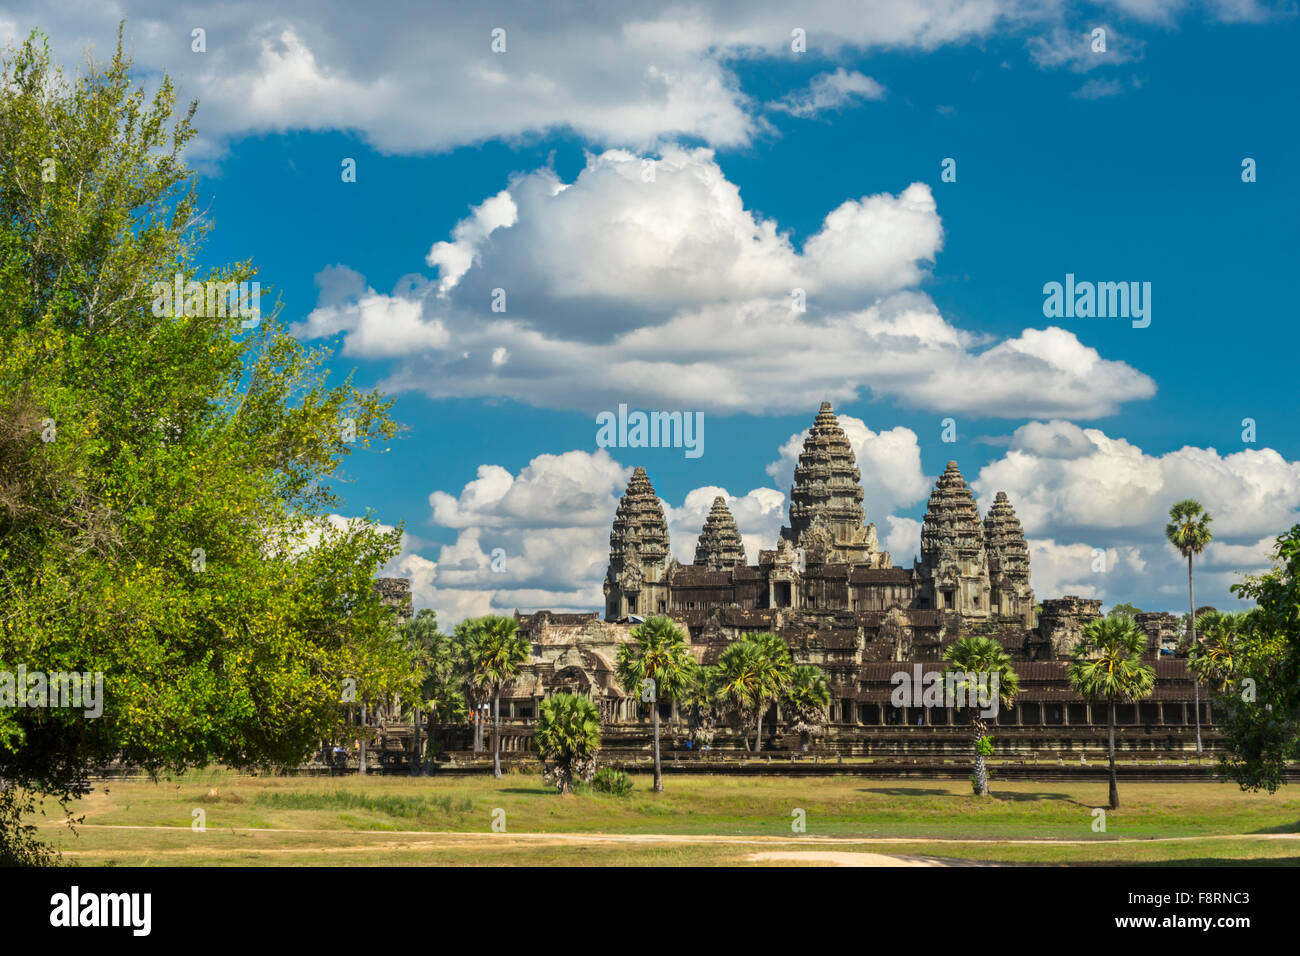 Ancien temple Angkor Wat, un jour ensoleillé, à cheval, blue skay et de nombreux nuages à Siem Reap. Cambodge Banque D'Images